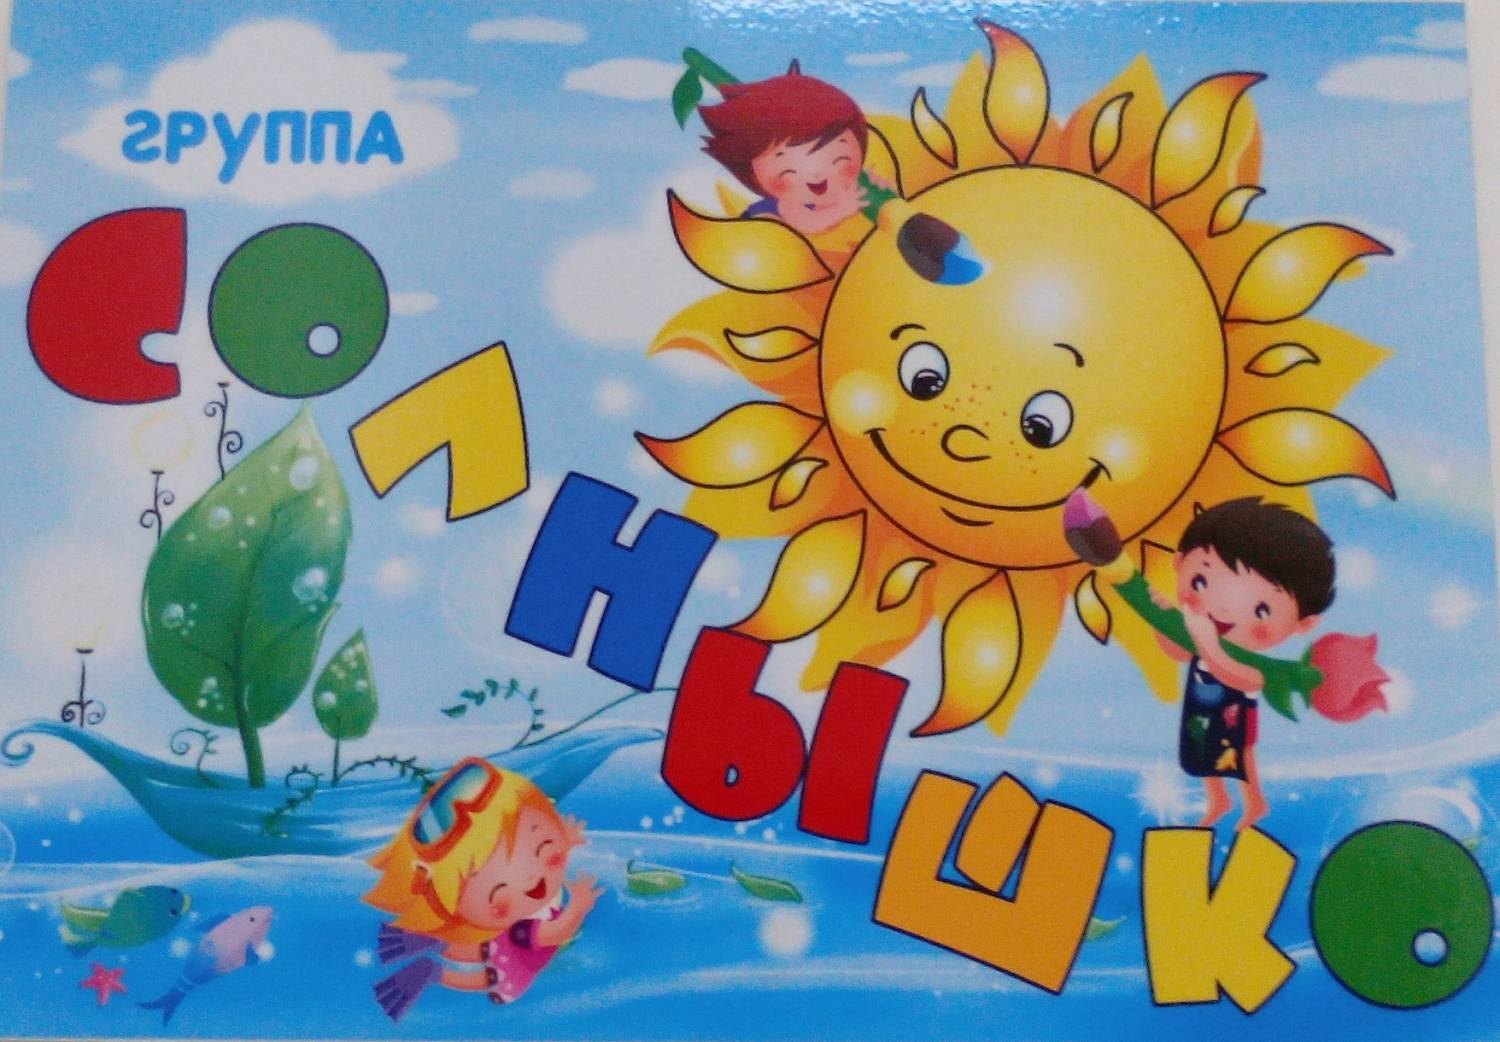 Солнце картинки для детей с названиями. Группа солнышко в детском саду. Картинка солнце для детей в детском саду. Название группы солнышко в детском саду. Картинки солнышко для детского сада.